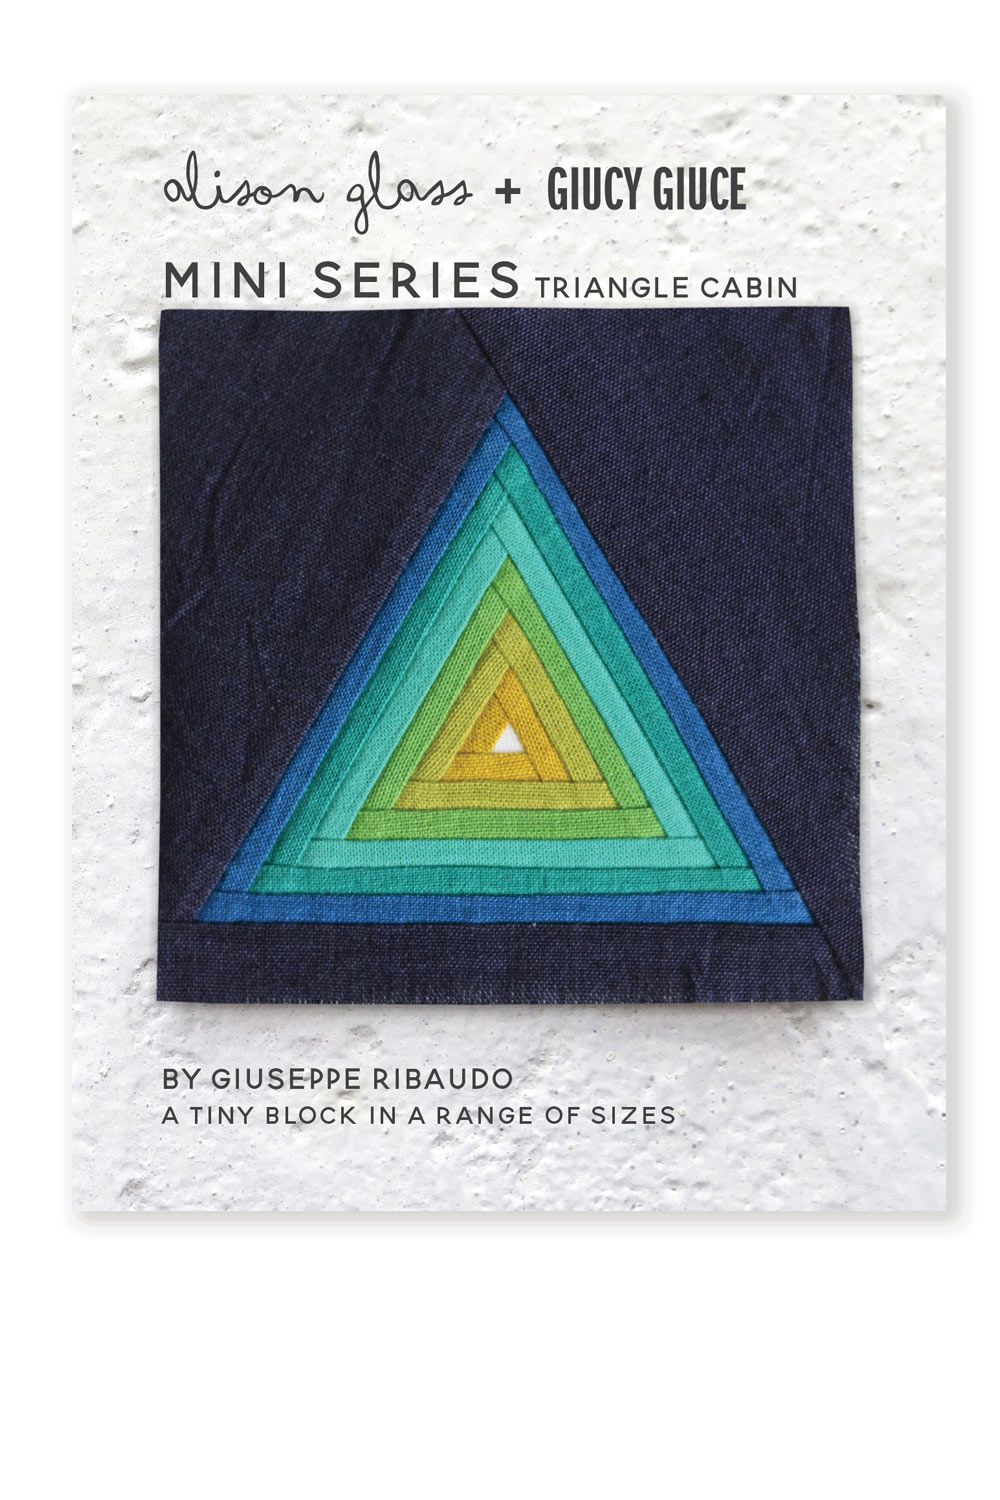 NEW Mini Series Triangle Cabin Alison Glass + Giucy Giuce Quilt Mini Block 